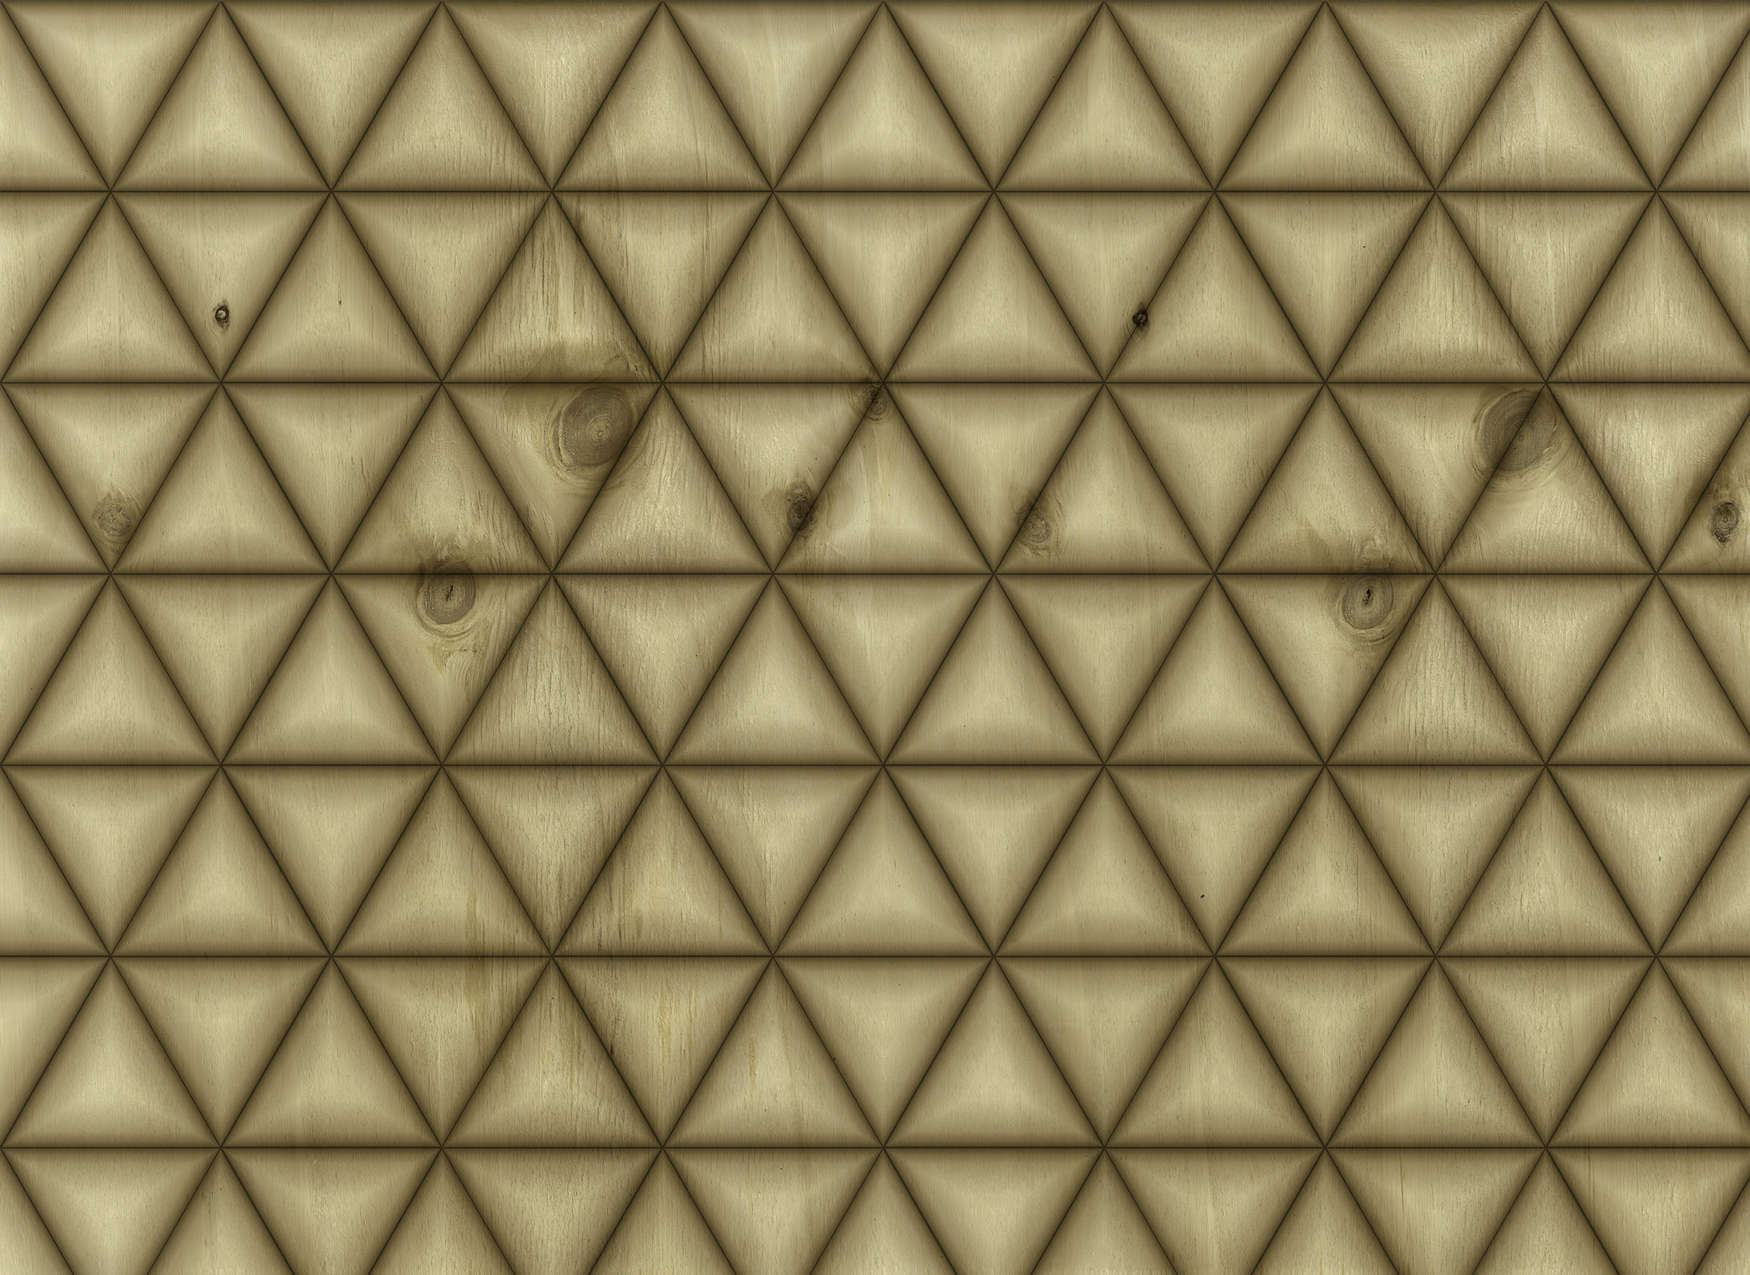             Wandschildering geometrisch driehoekpatroon in houtlook - Bruin, Beige
        